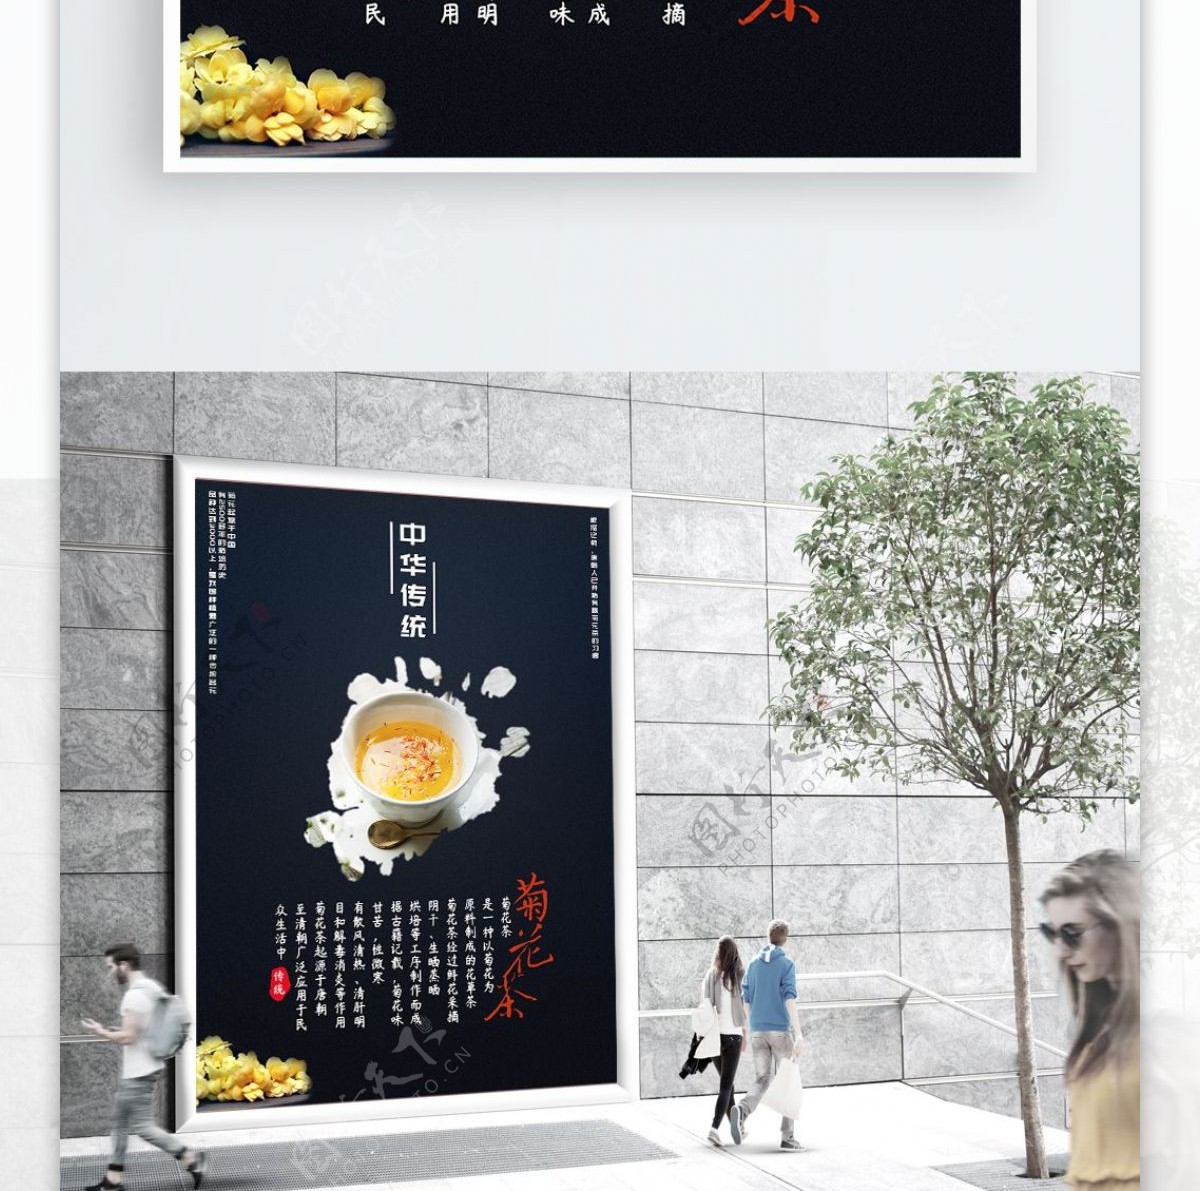 中华传统茶饮菊花茶古典中国风美食海报